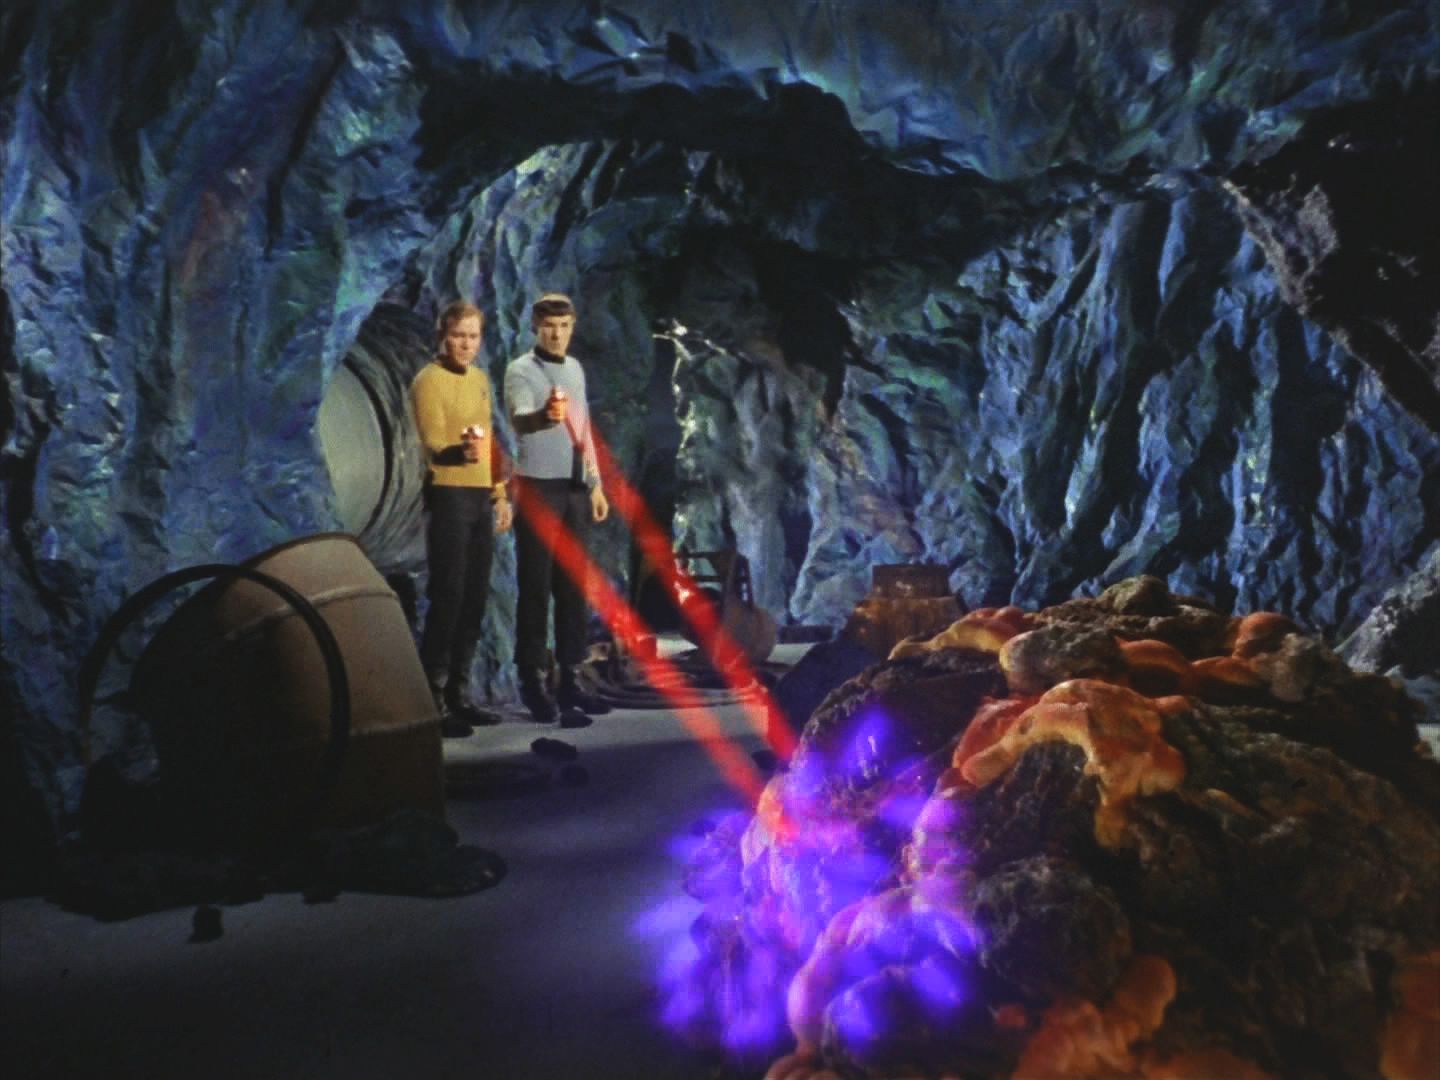 Posílený výsadek z Enterprise i horníci začínají pátrat po zabijákovi ve spletitém komplexu tunelů. Kirk a Spock na něj narazili a dvěma phasery ho zranili a přinutili k ústupu.